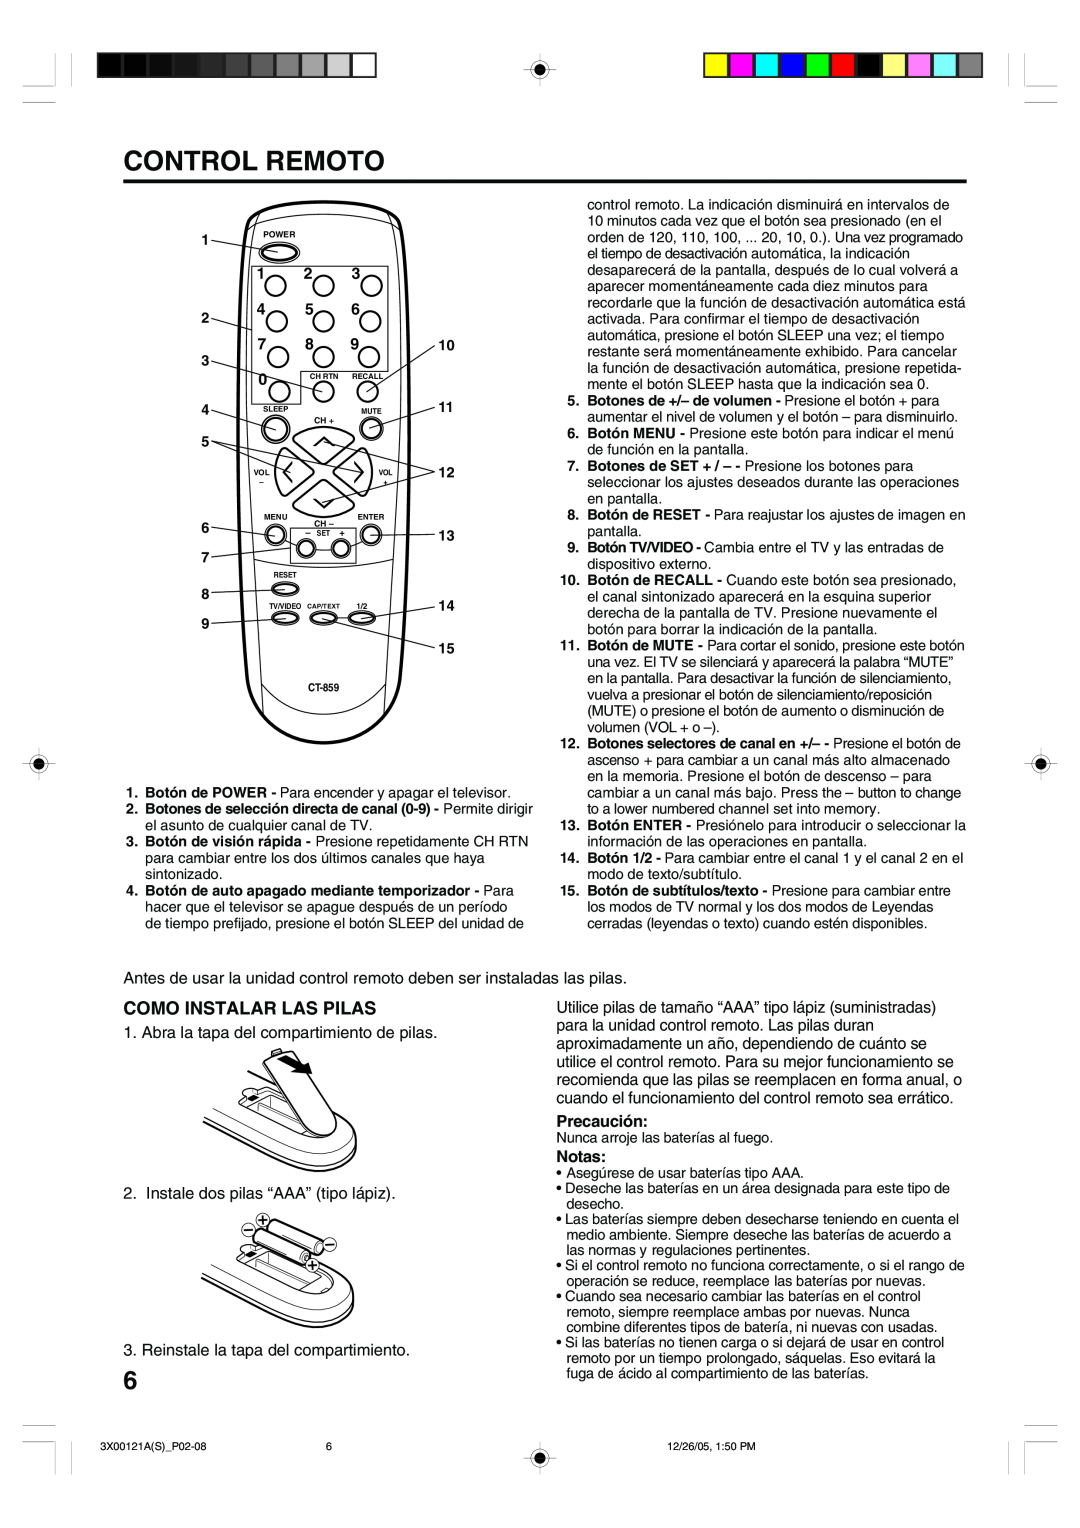 Toshiba 13A26 manual Control Remoto, Como Instalar Las Pilas, Abra la tapa del compartimiento de pilas 